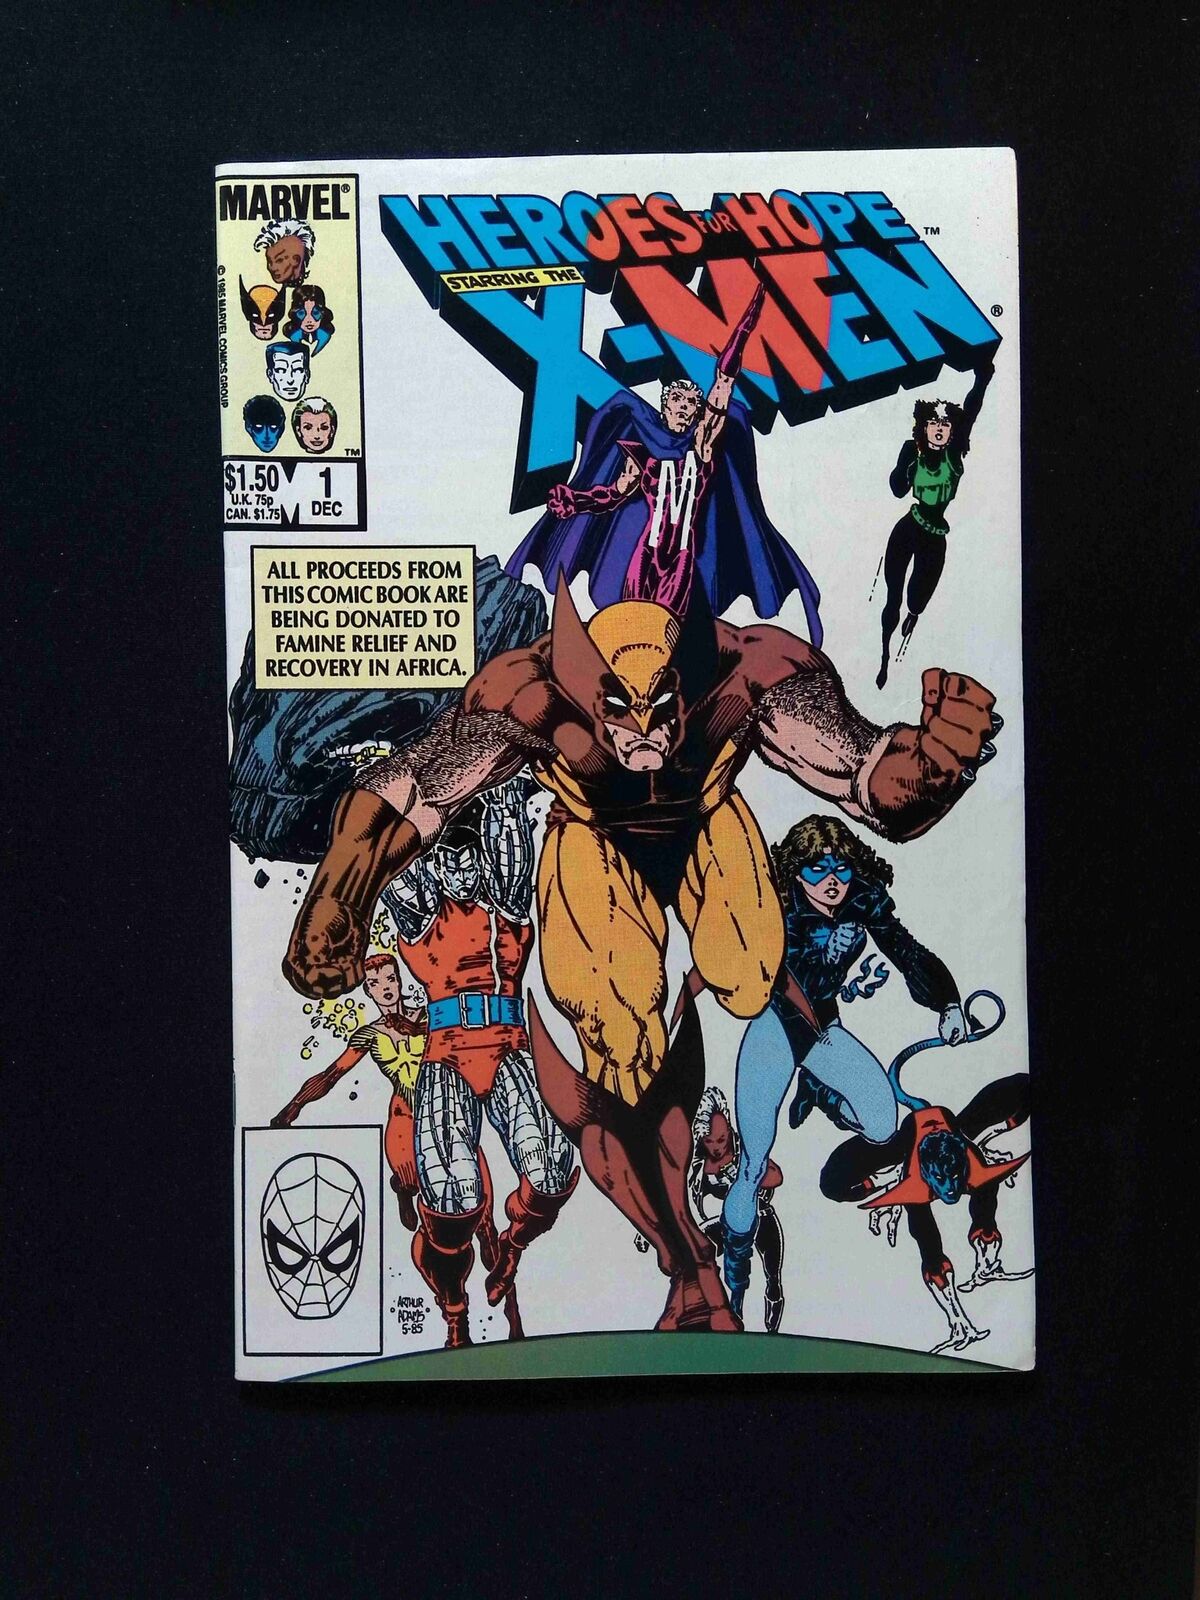 Heroes for Hope Starring the X-Men #1  Marvel Comics 1985 VF+